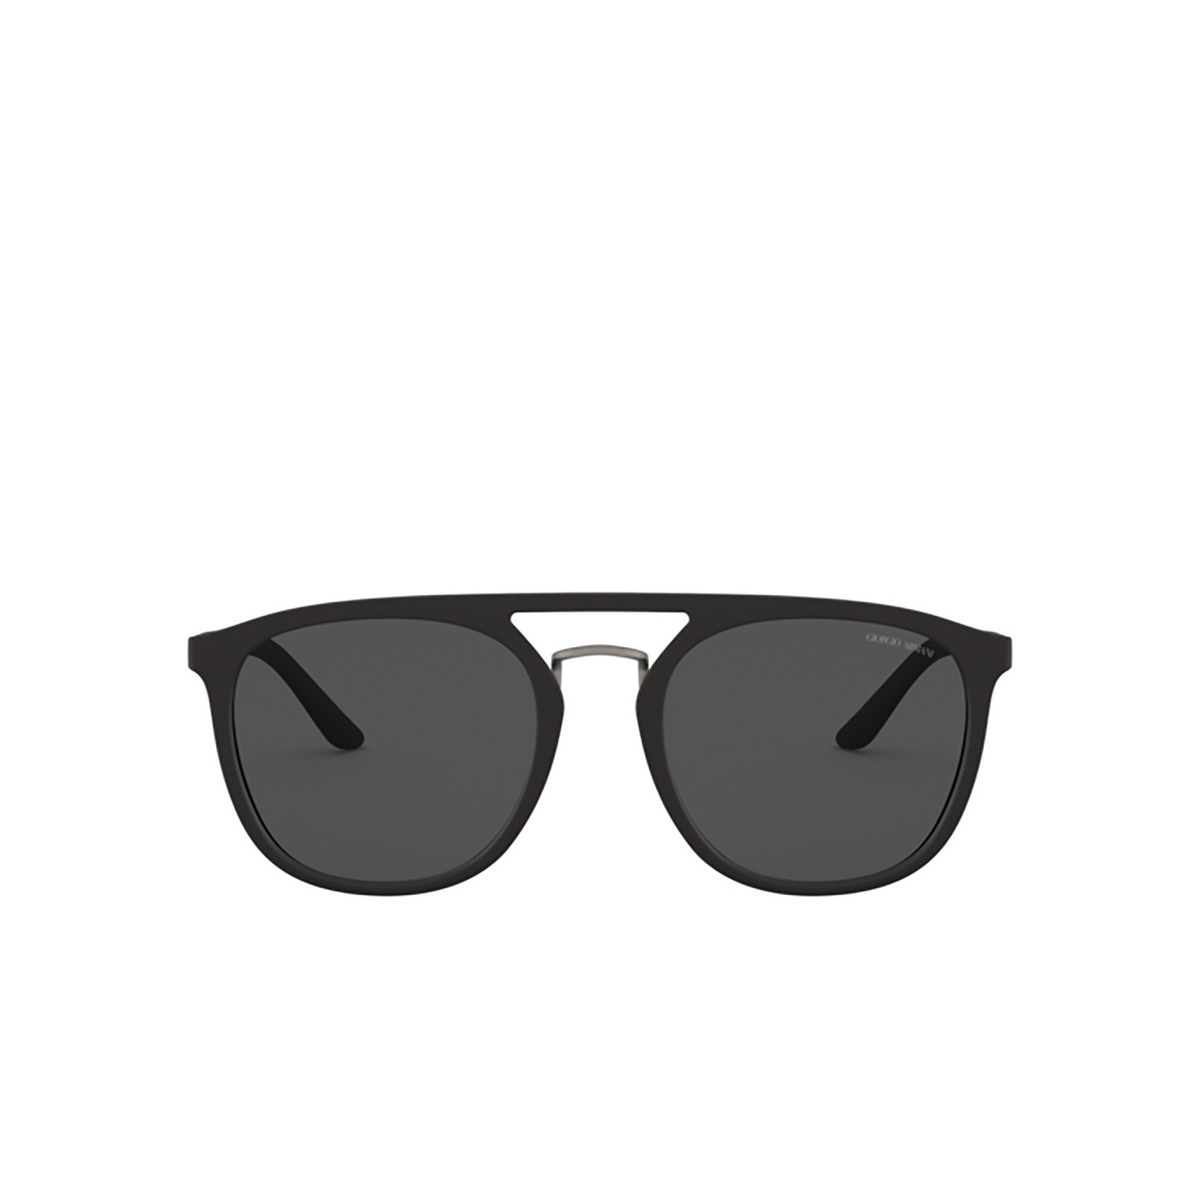 Giorgio Armani AR8118 Sunglasses 500187 Black - front view